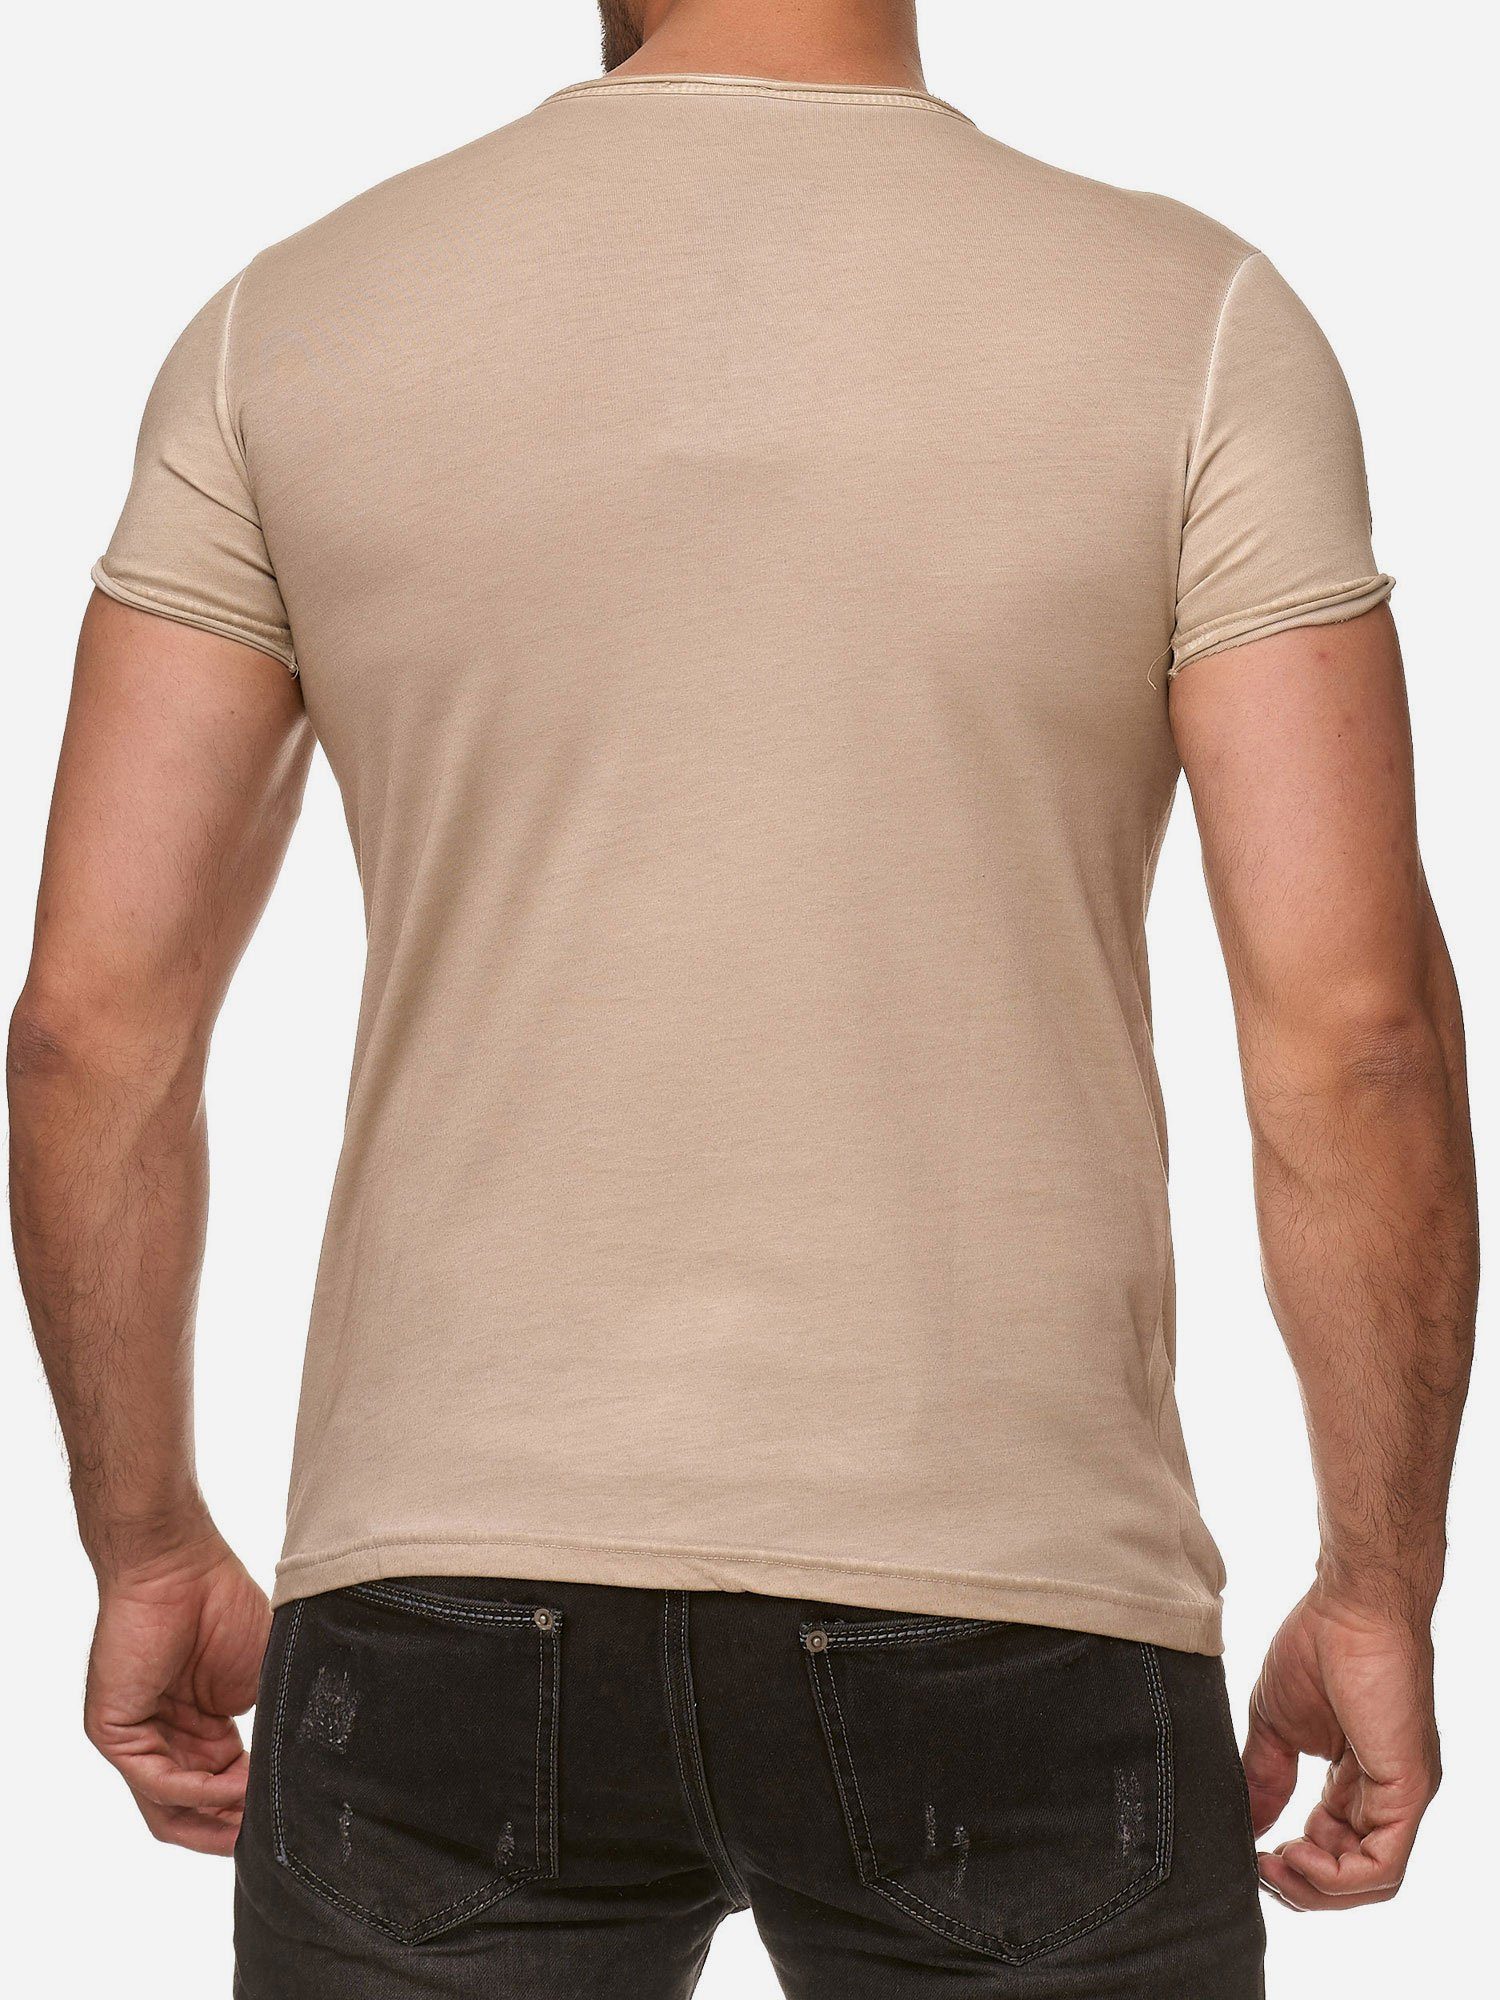 Tazzio T-Shirt 4050-1 Rundhalsshirt in Look Kragen Used beige offenem dezentem Ölwaschung und mit